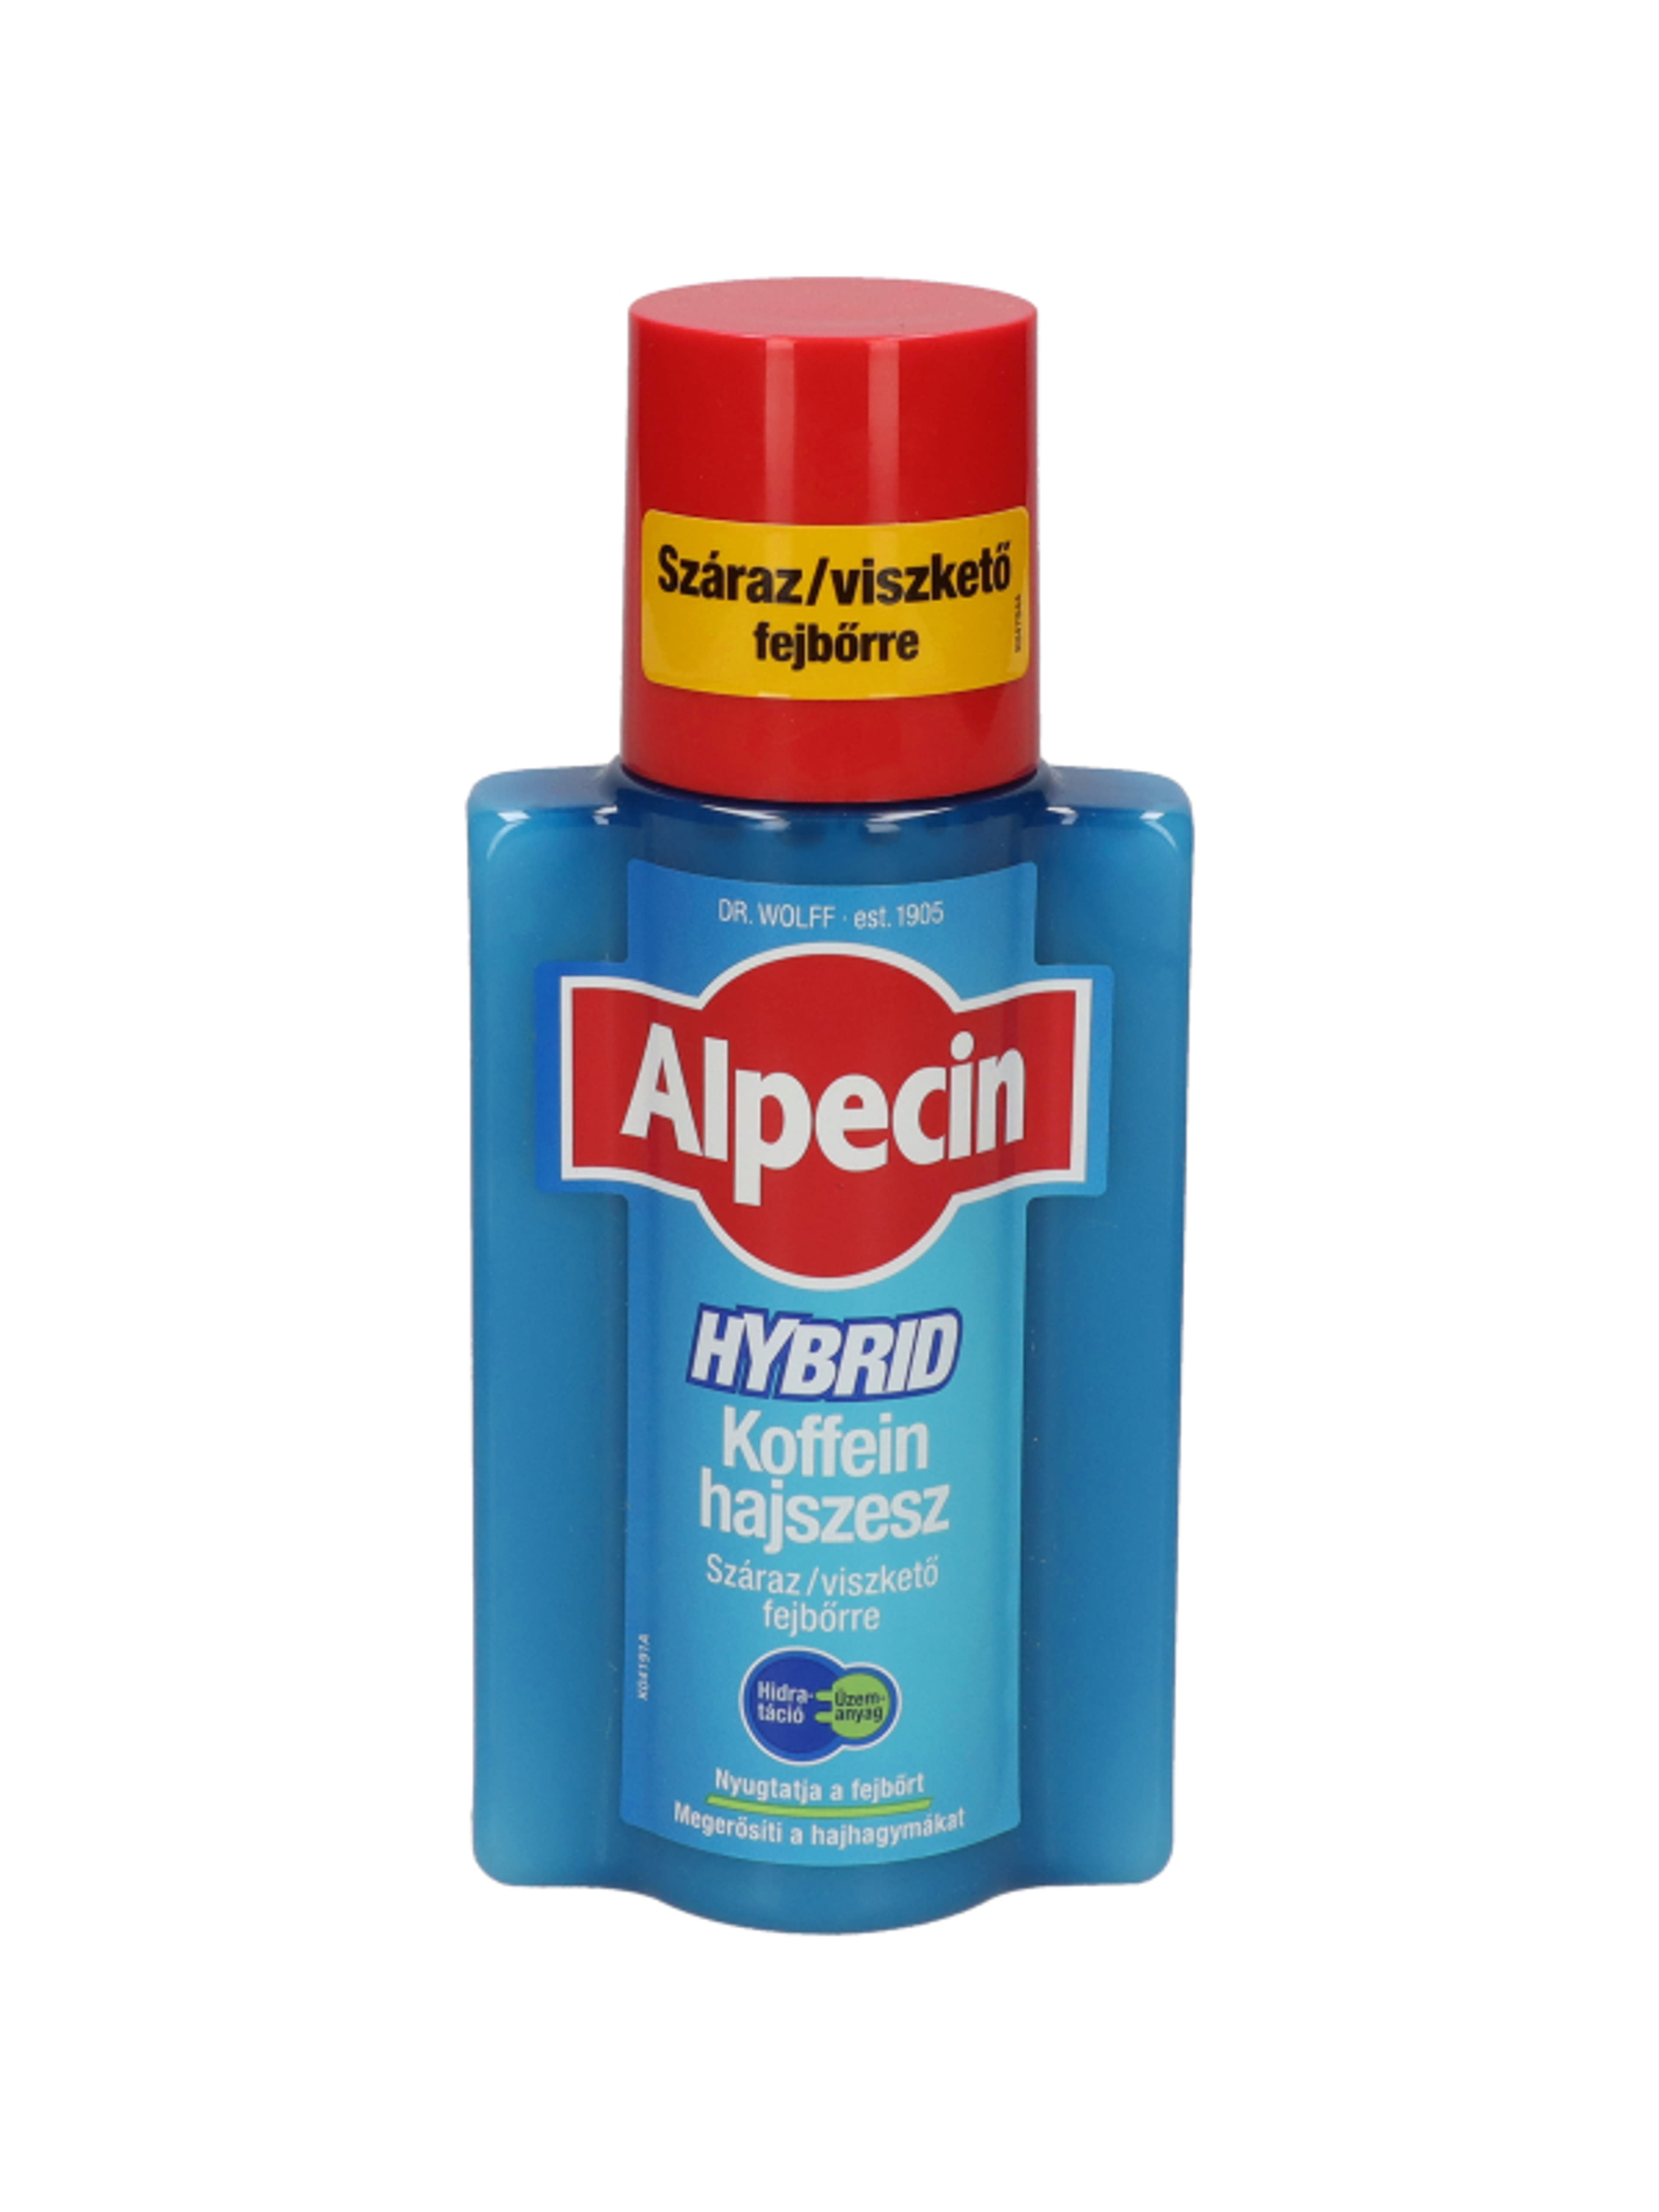 Alpecin hybrid koffein hajszesz - 200 ml